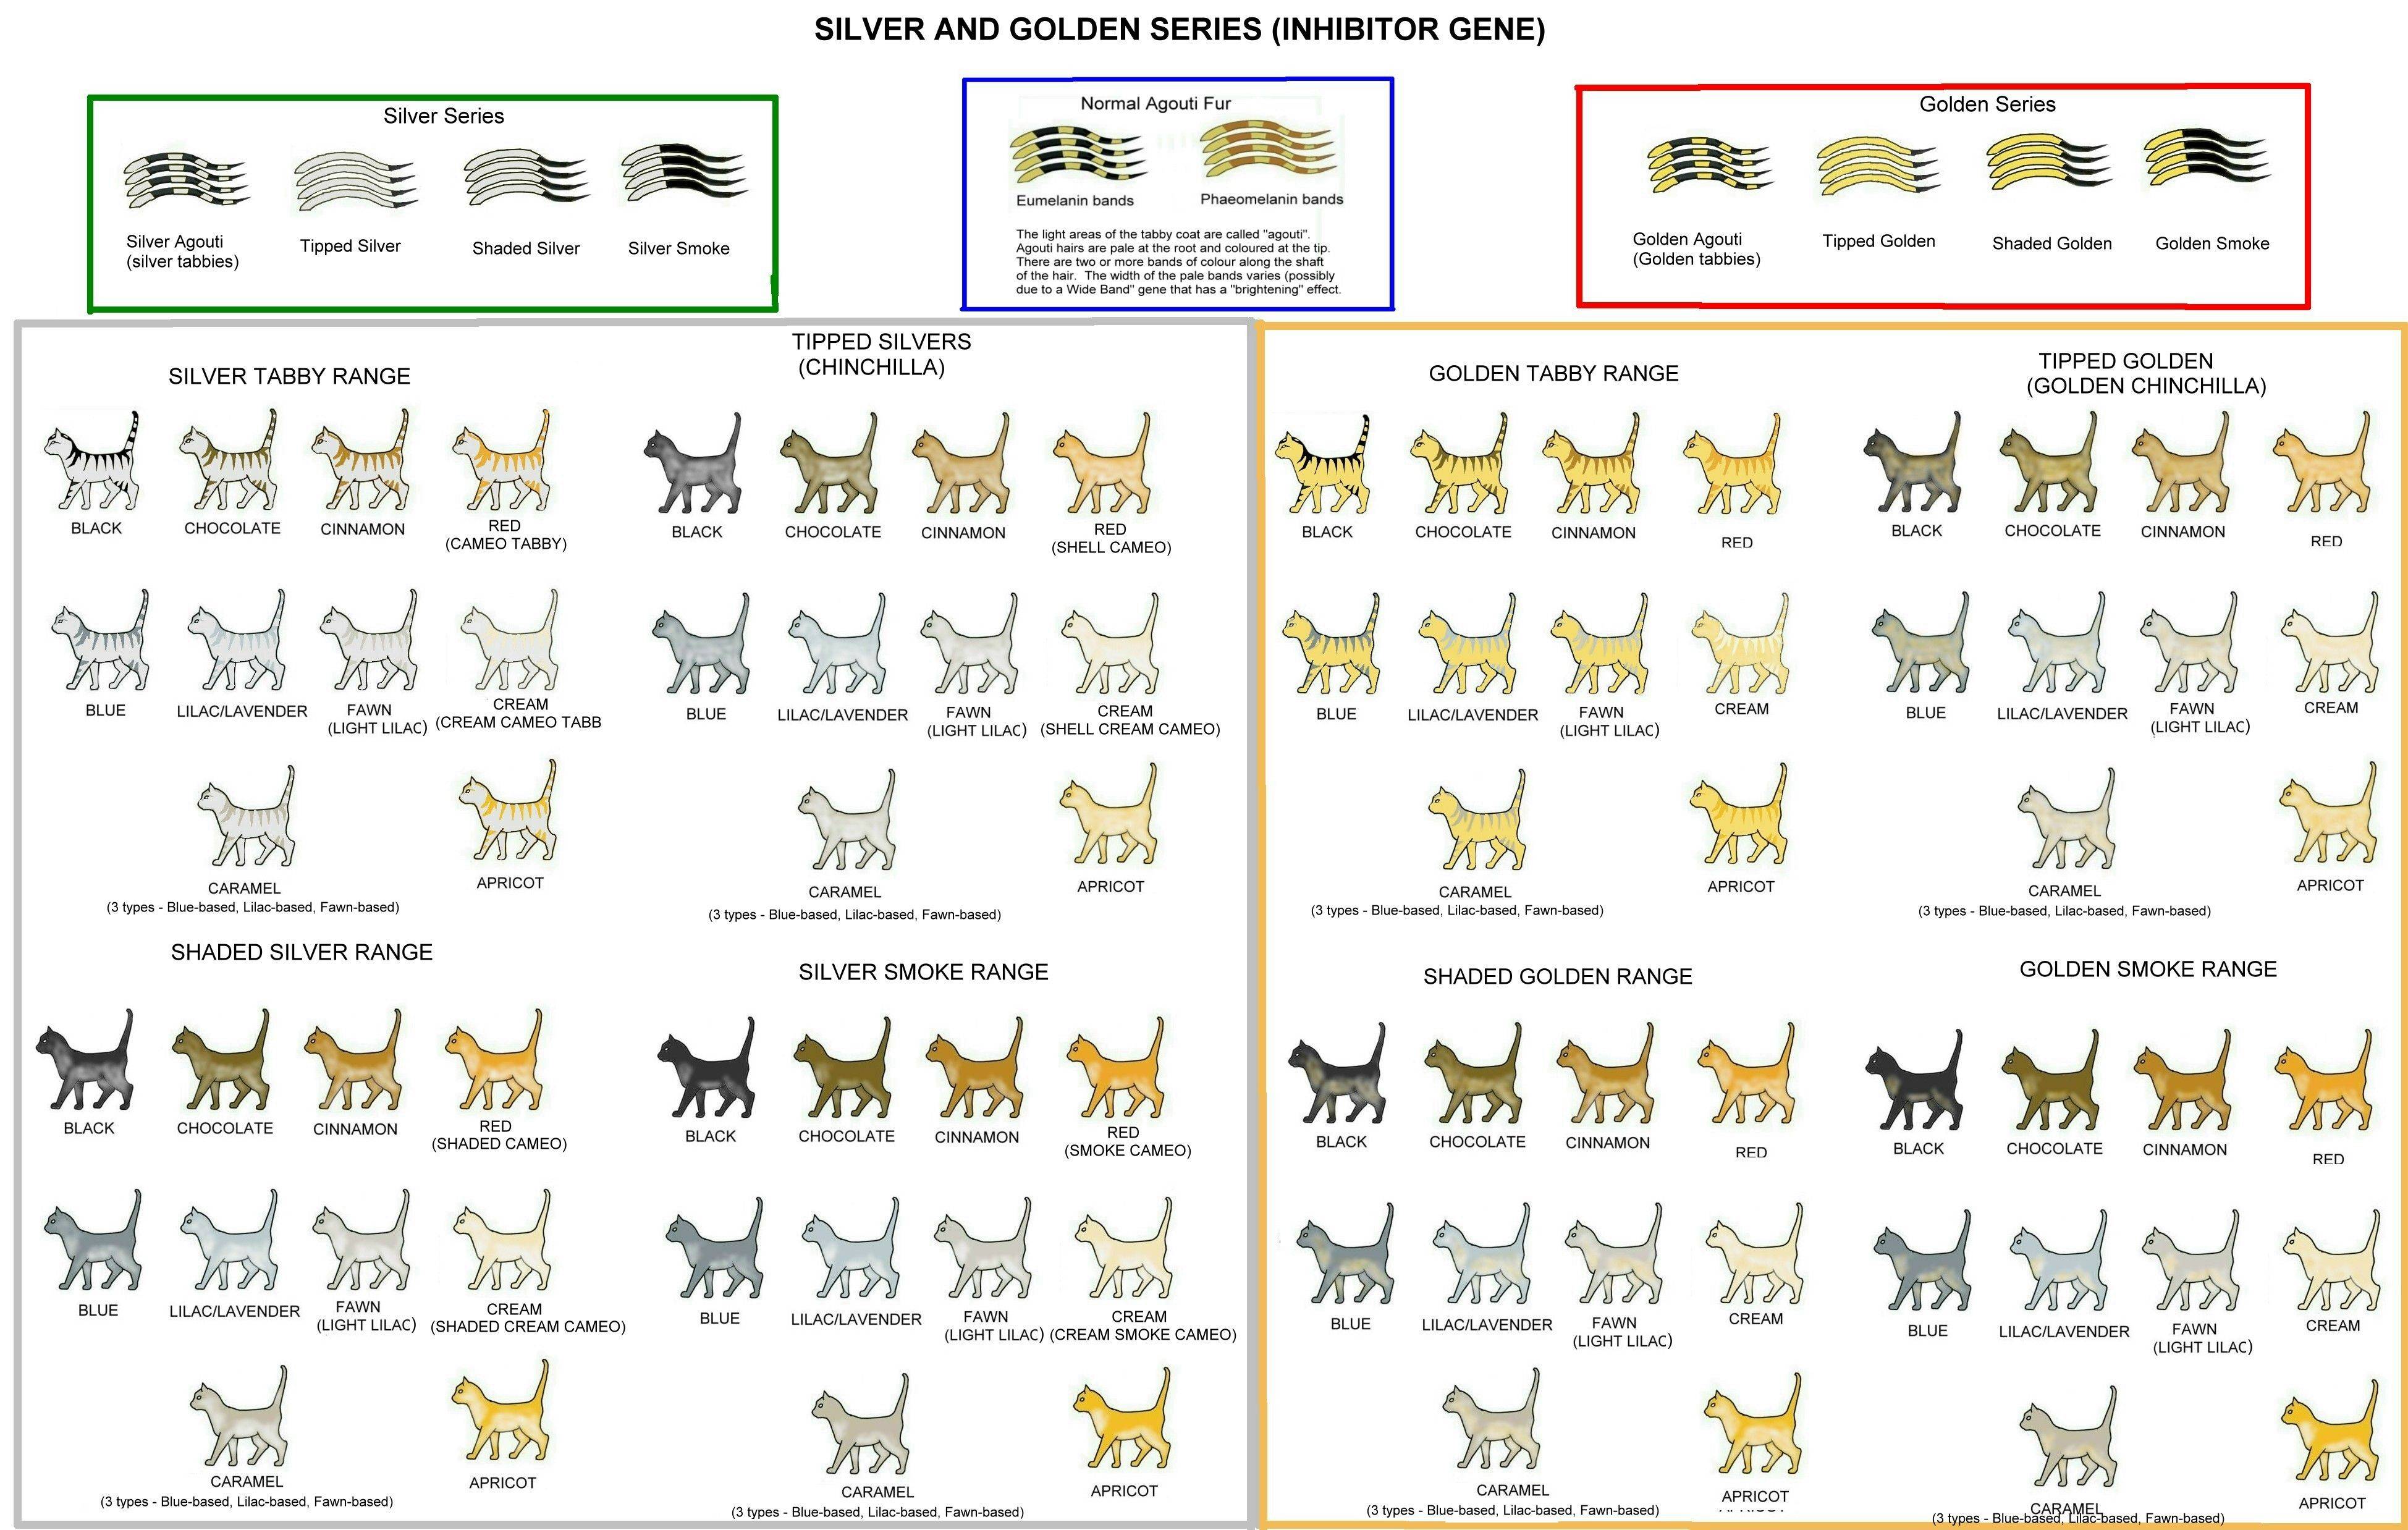 Полосатый котенок - фото, описание и название породы